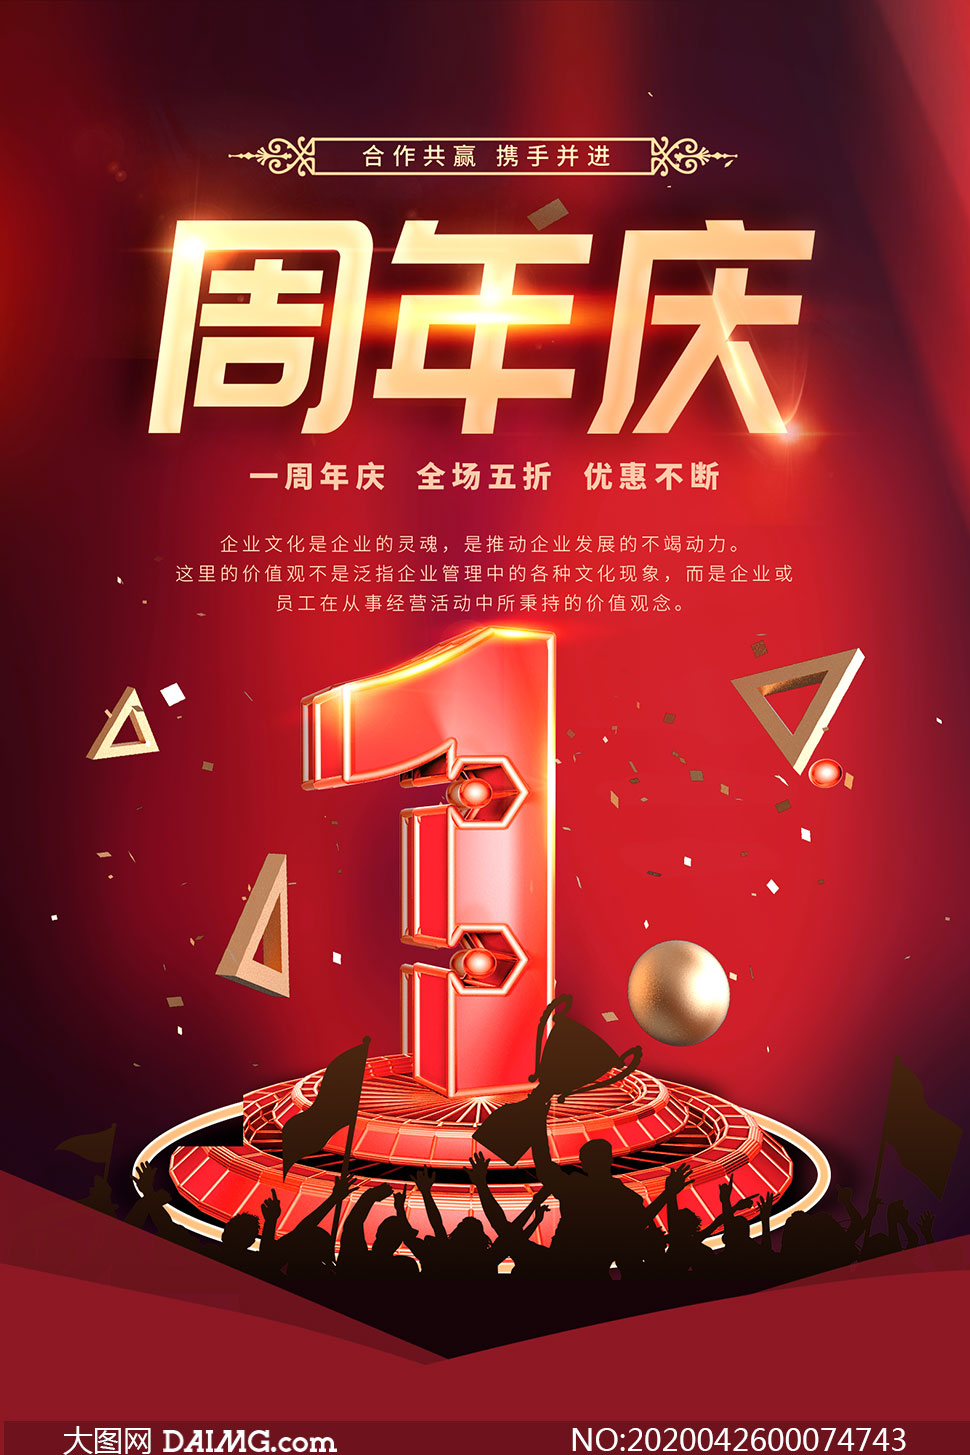 5周年店庆狂欢宣传海报psd素材         15周年庆活动宣传单